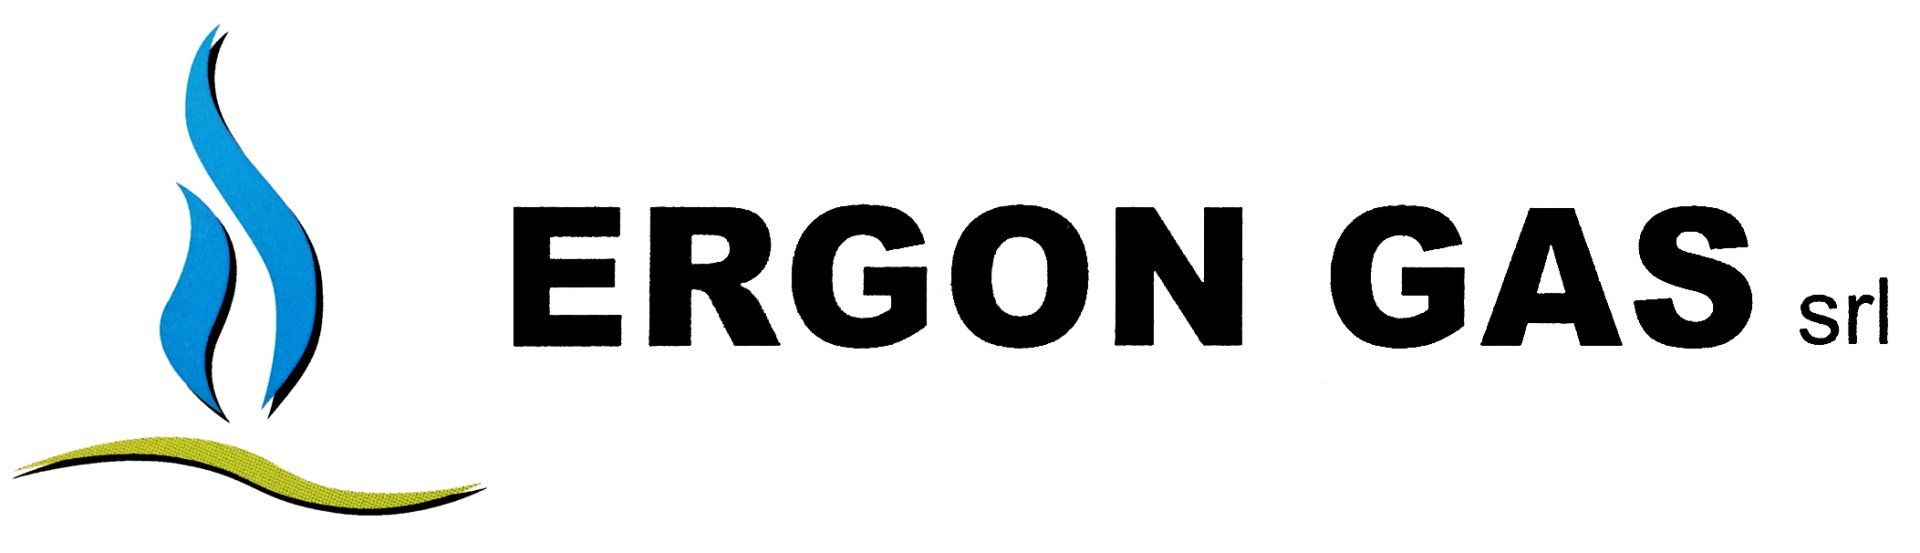 ERGON-GAS-LOGO